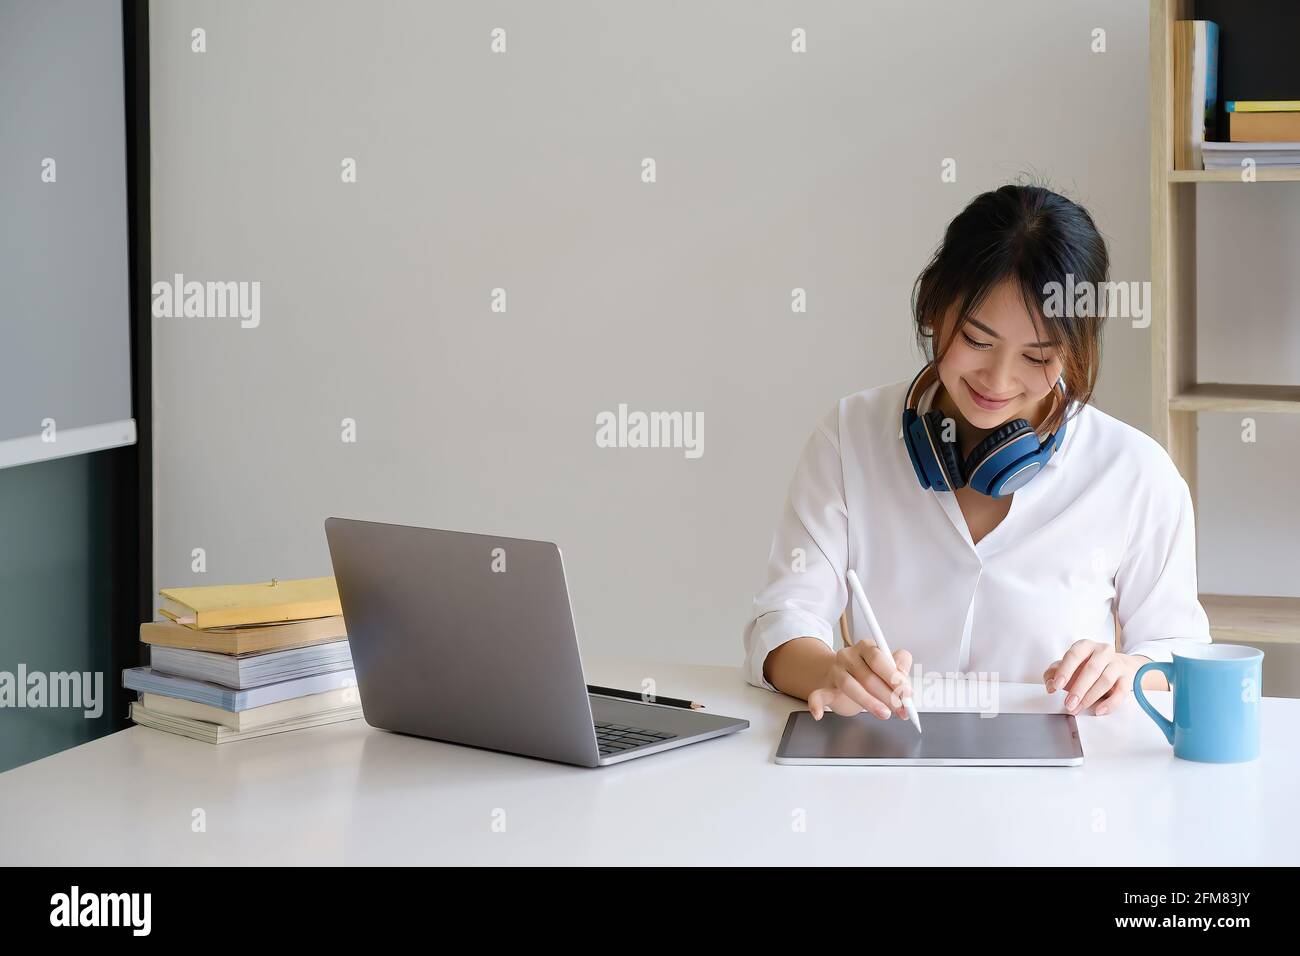 Ein Mädchen übt vor dem Online-Kurs per Video die Grundkursübungen auf dem Laptop. Soziale Distanzierung.Bleib zu Hause. Neuer Normalwert. Covid-19 Coronavirus-Konzept Stockfoto